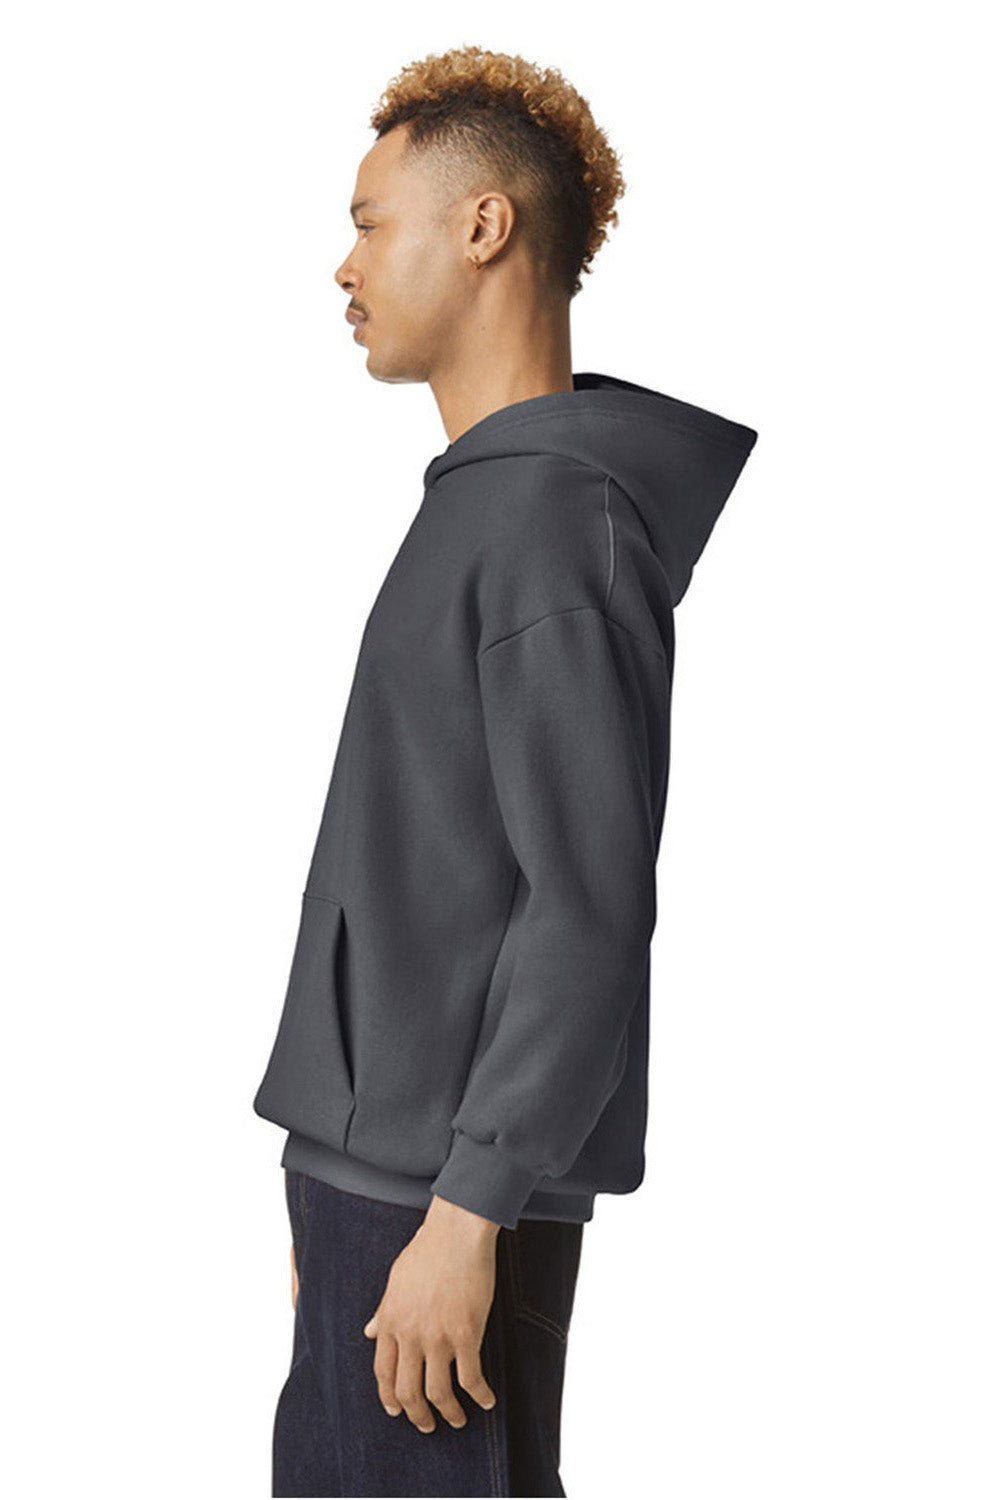 American Apparel RF498 Mens ReFlex Fleece Hooded Sweatshirt Hoodie Asphalt Model Side